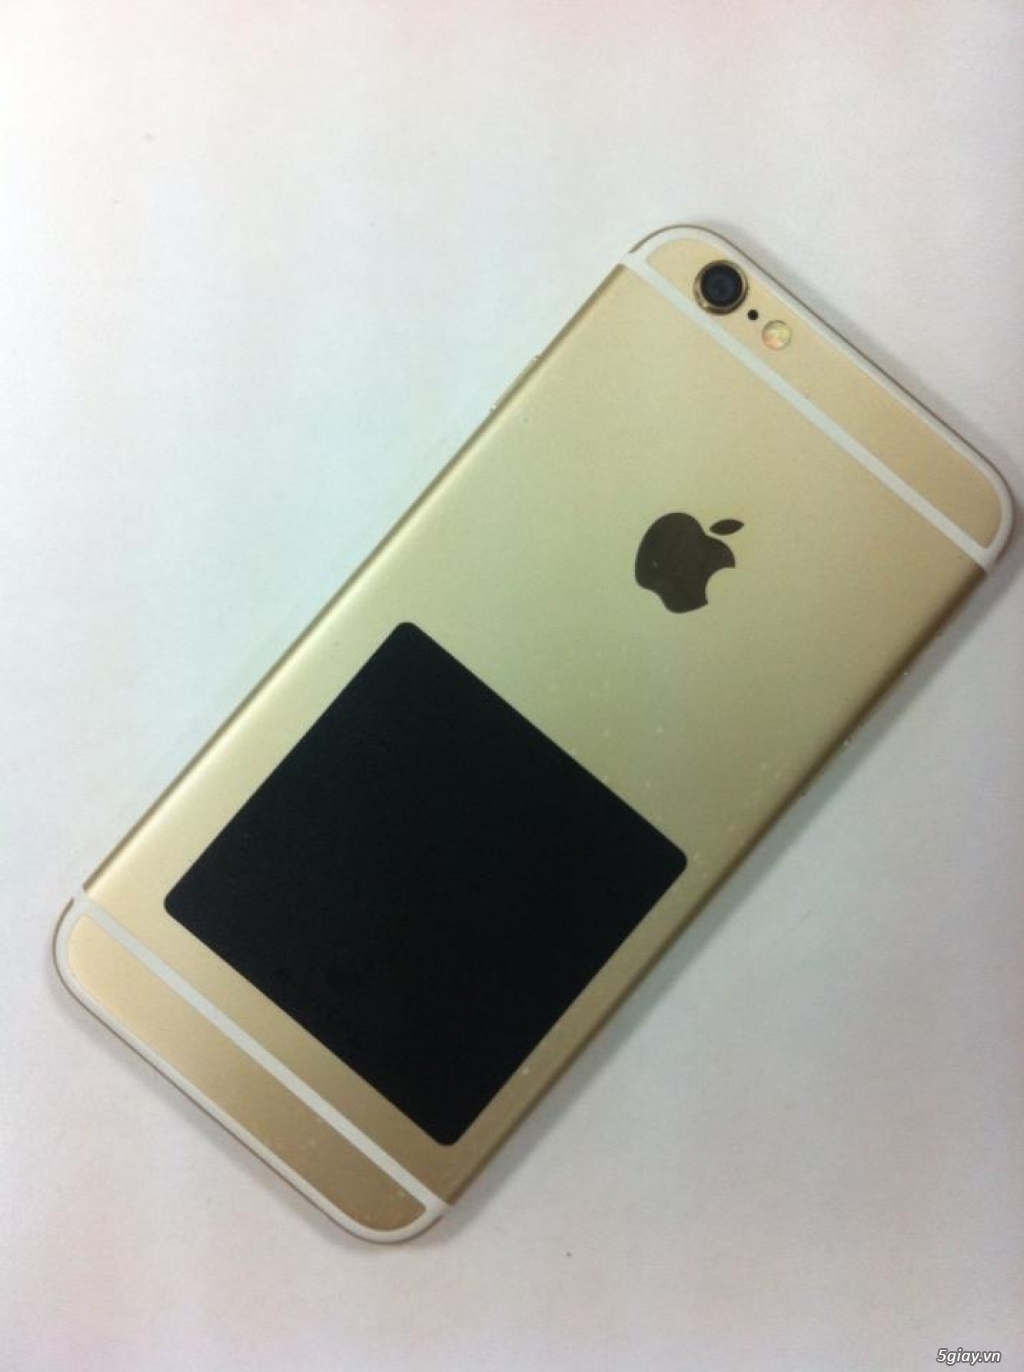 ĐT iPhone 6, 16GB (Vàng) - Lock Nhật - Hàng 99% - 2